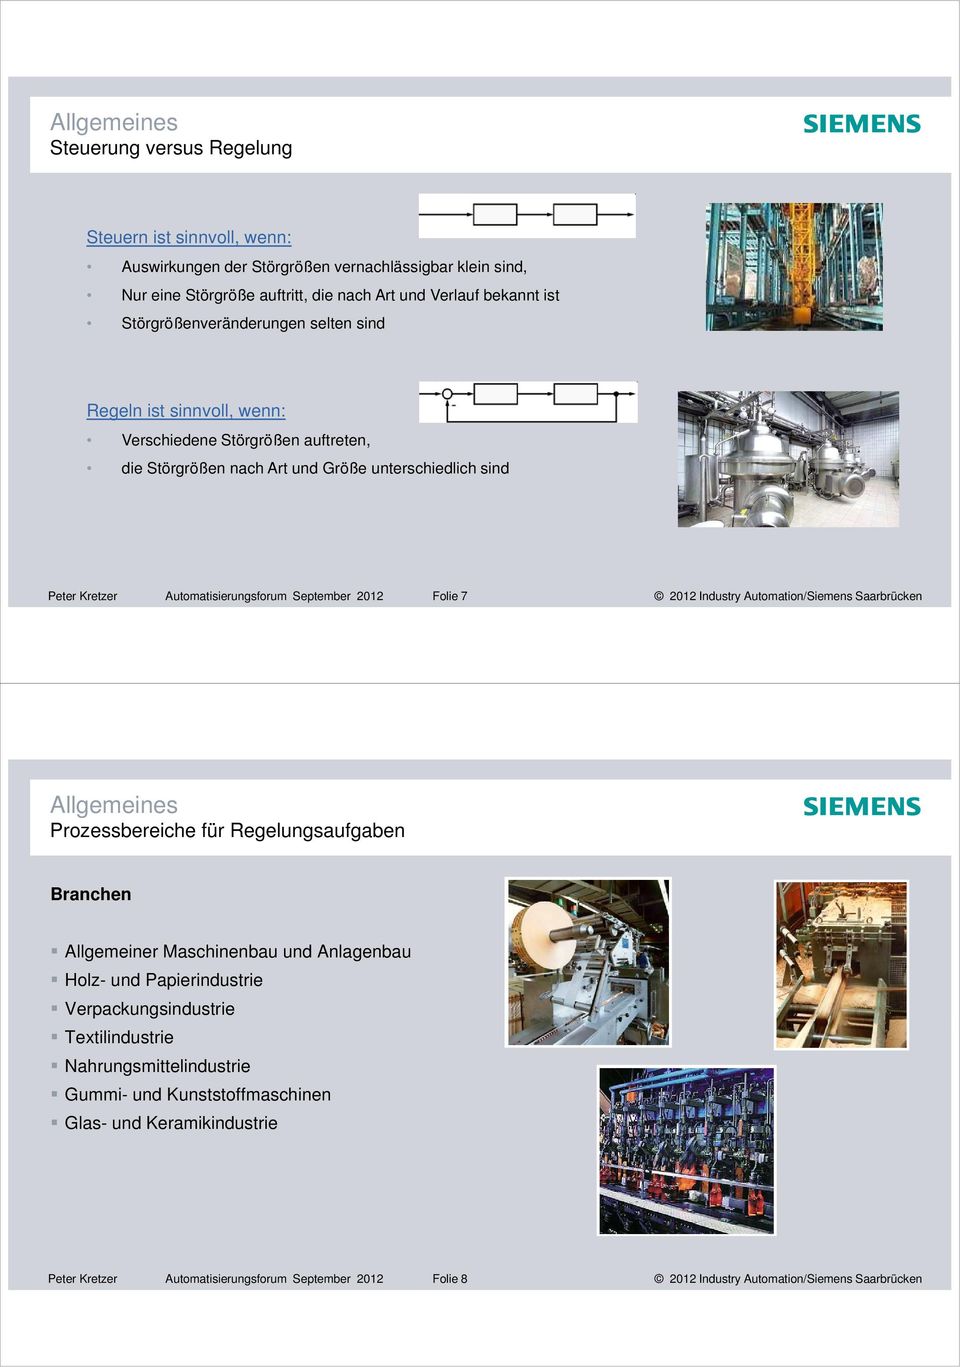 2012 Folie 7 2012 Industry Automation/Siemens Saarbrücken Allgemeines Prozessbereiche für Regelungsaufgaben Branchen Allgemeiner Maschinenbau und Anlagenbau Holz- und Papierindustrie